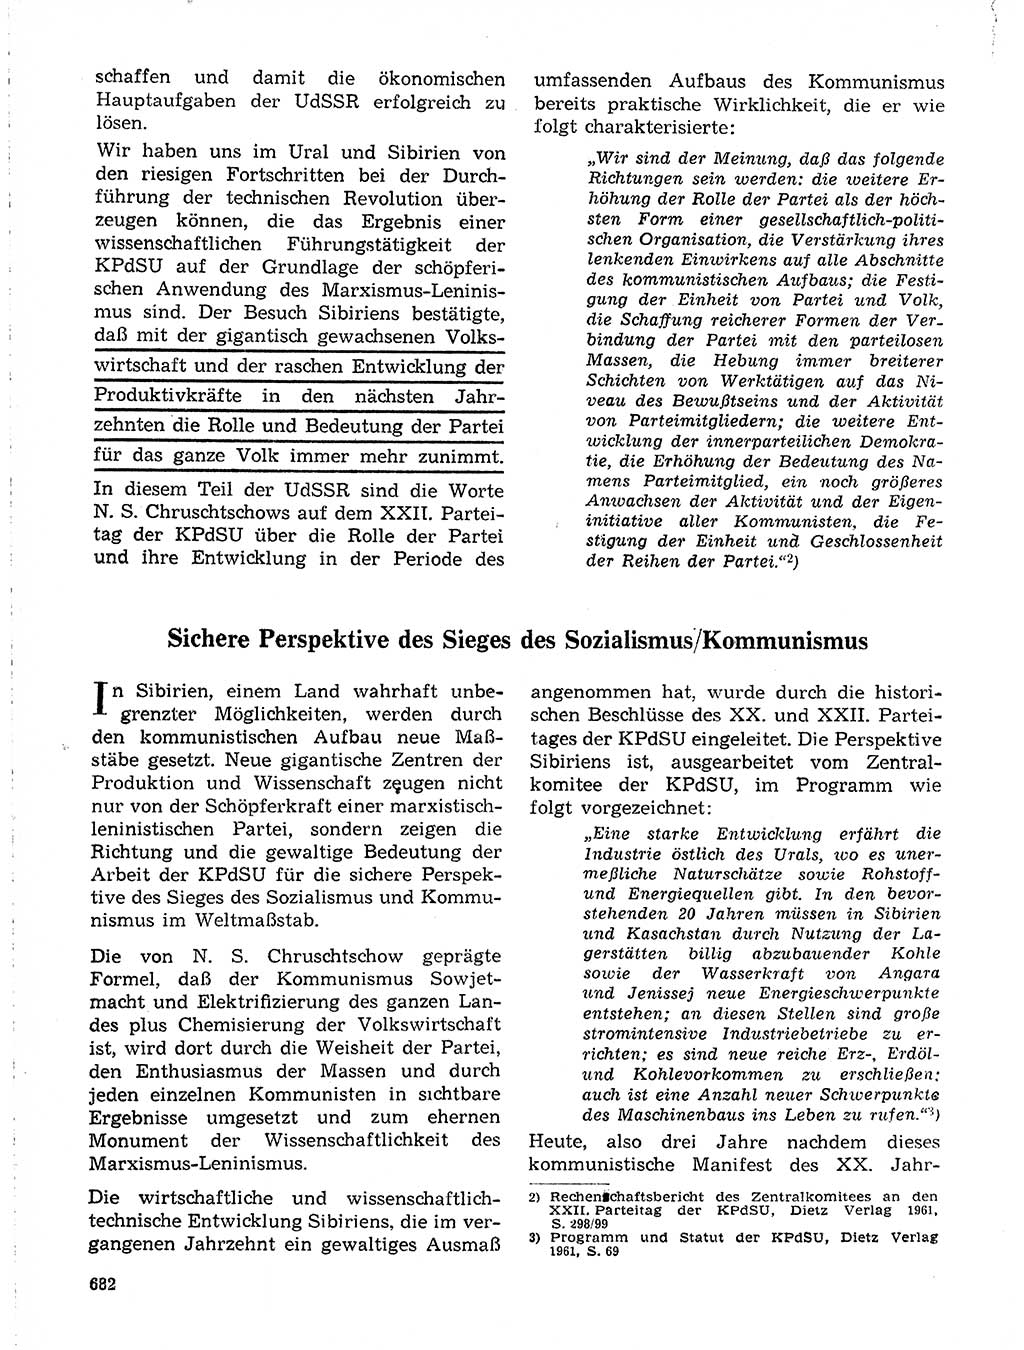 Neuer Weg (NW), Organ des Zentralkomitees (ZK) der SED (Sozialistische Einheitspartei Deutschlands) für Fragen des Parteilebens, 19. Jahrgang [Deutsche Demokratische Republik (DDR)] 1964, Seite 682 (NW ZK SED DDR 1964, S. 682)